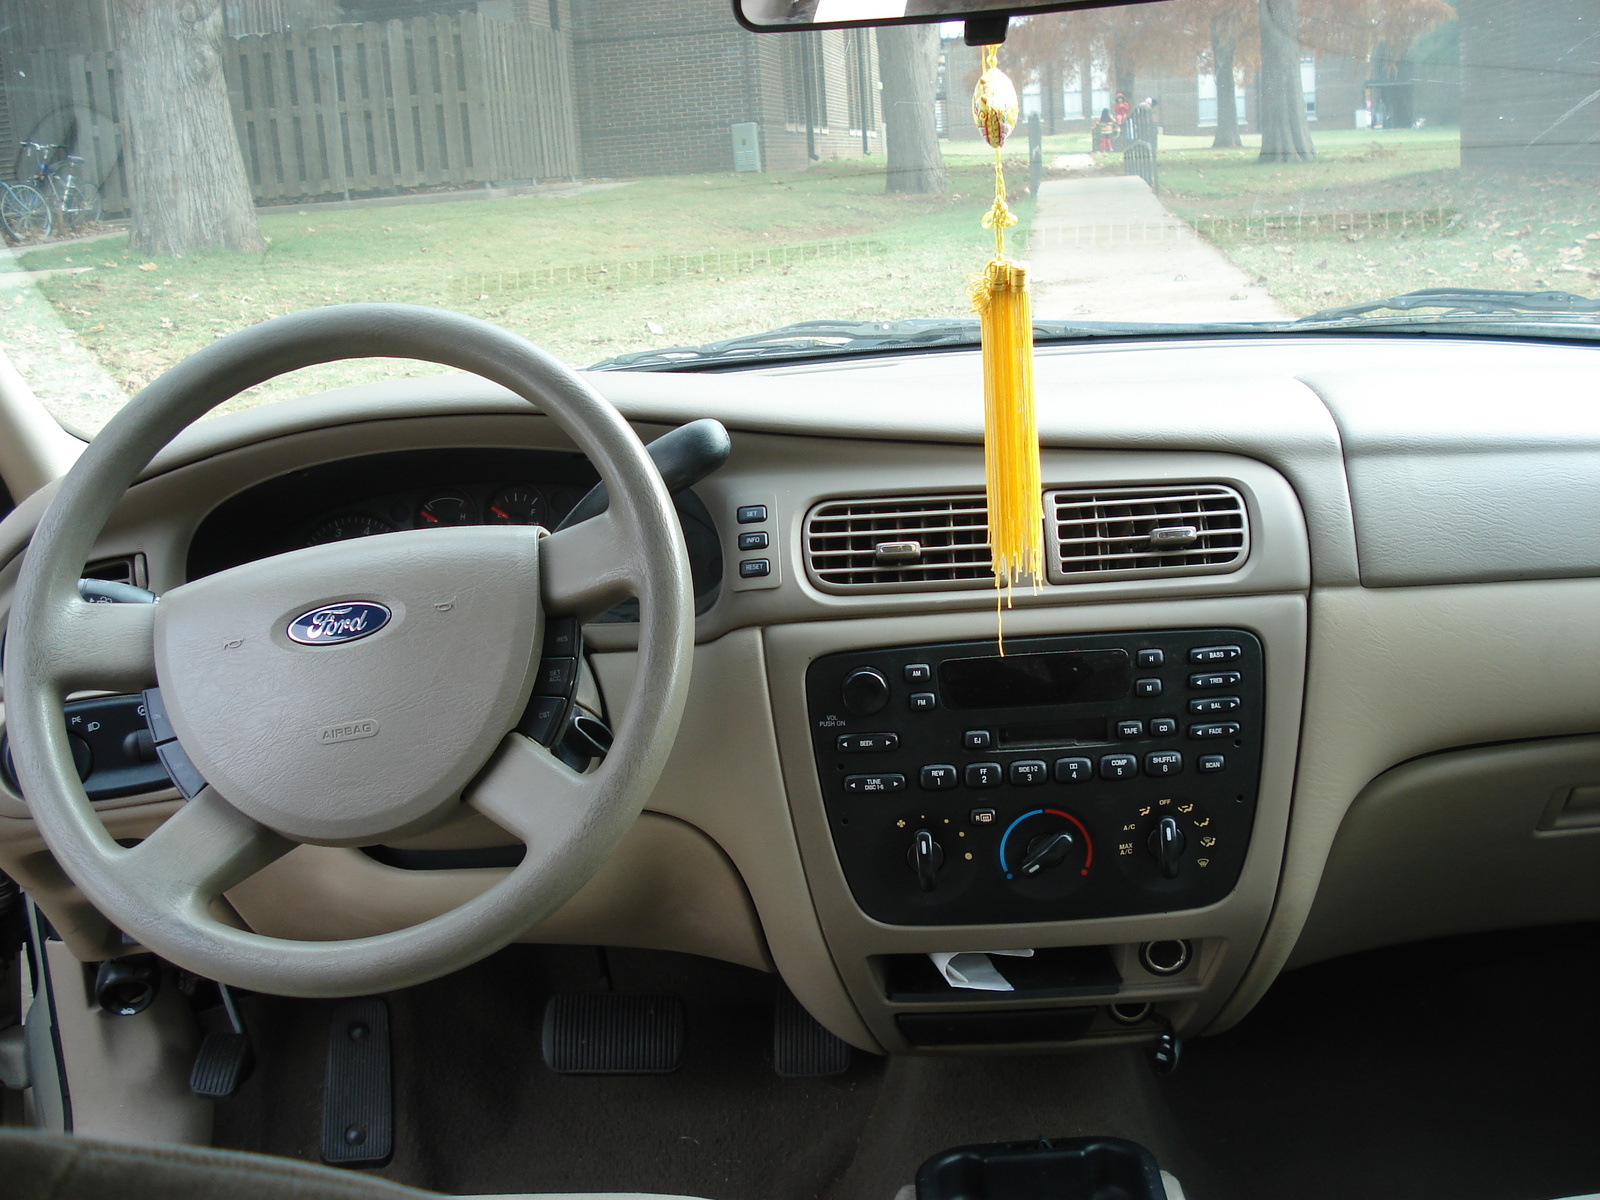 2005 Ford taurus interior #7